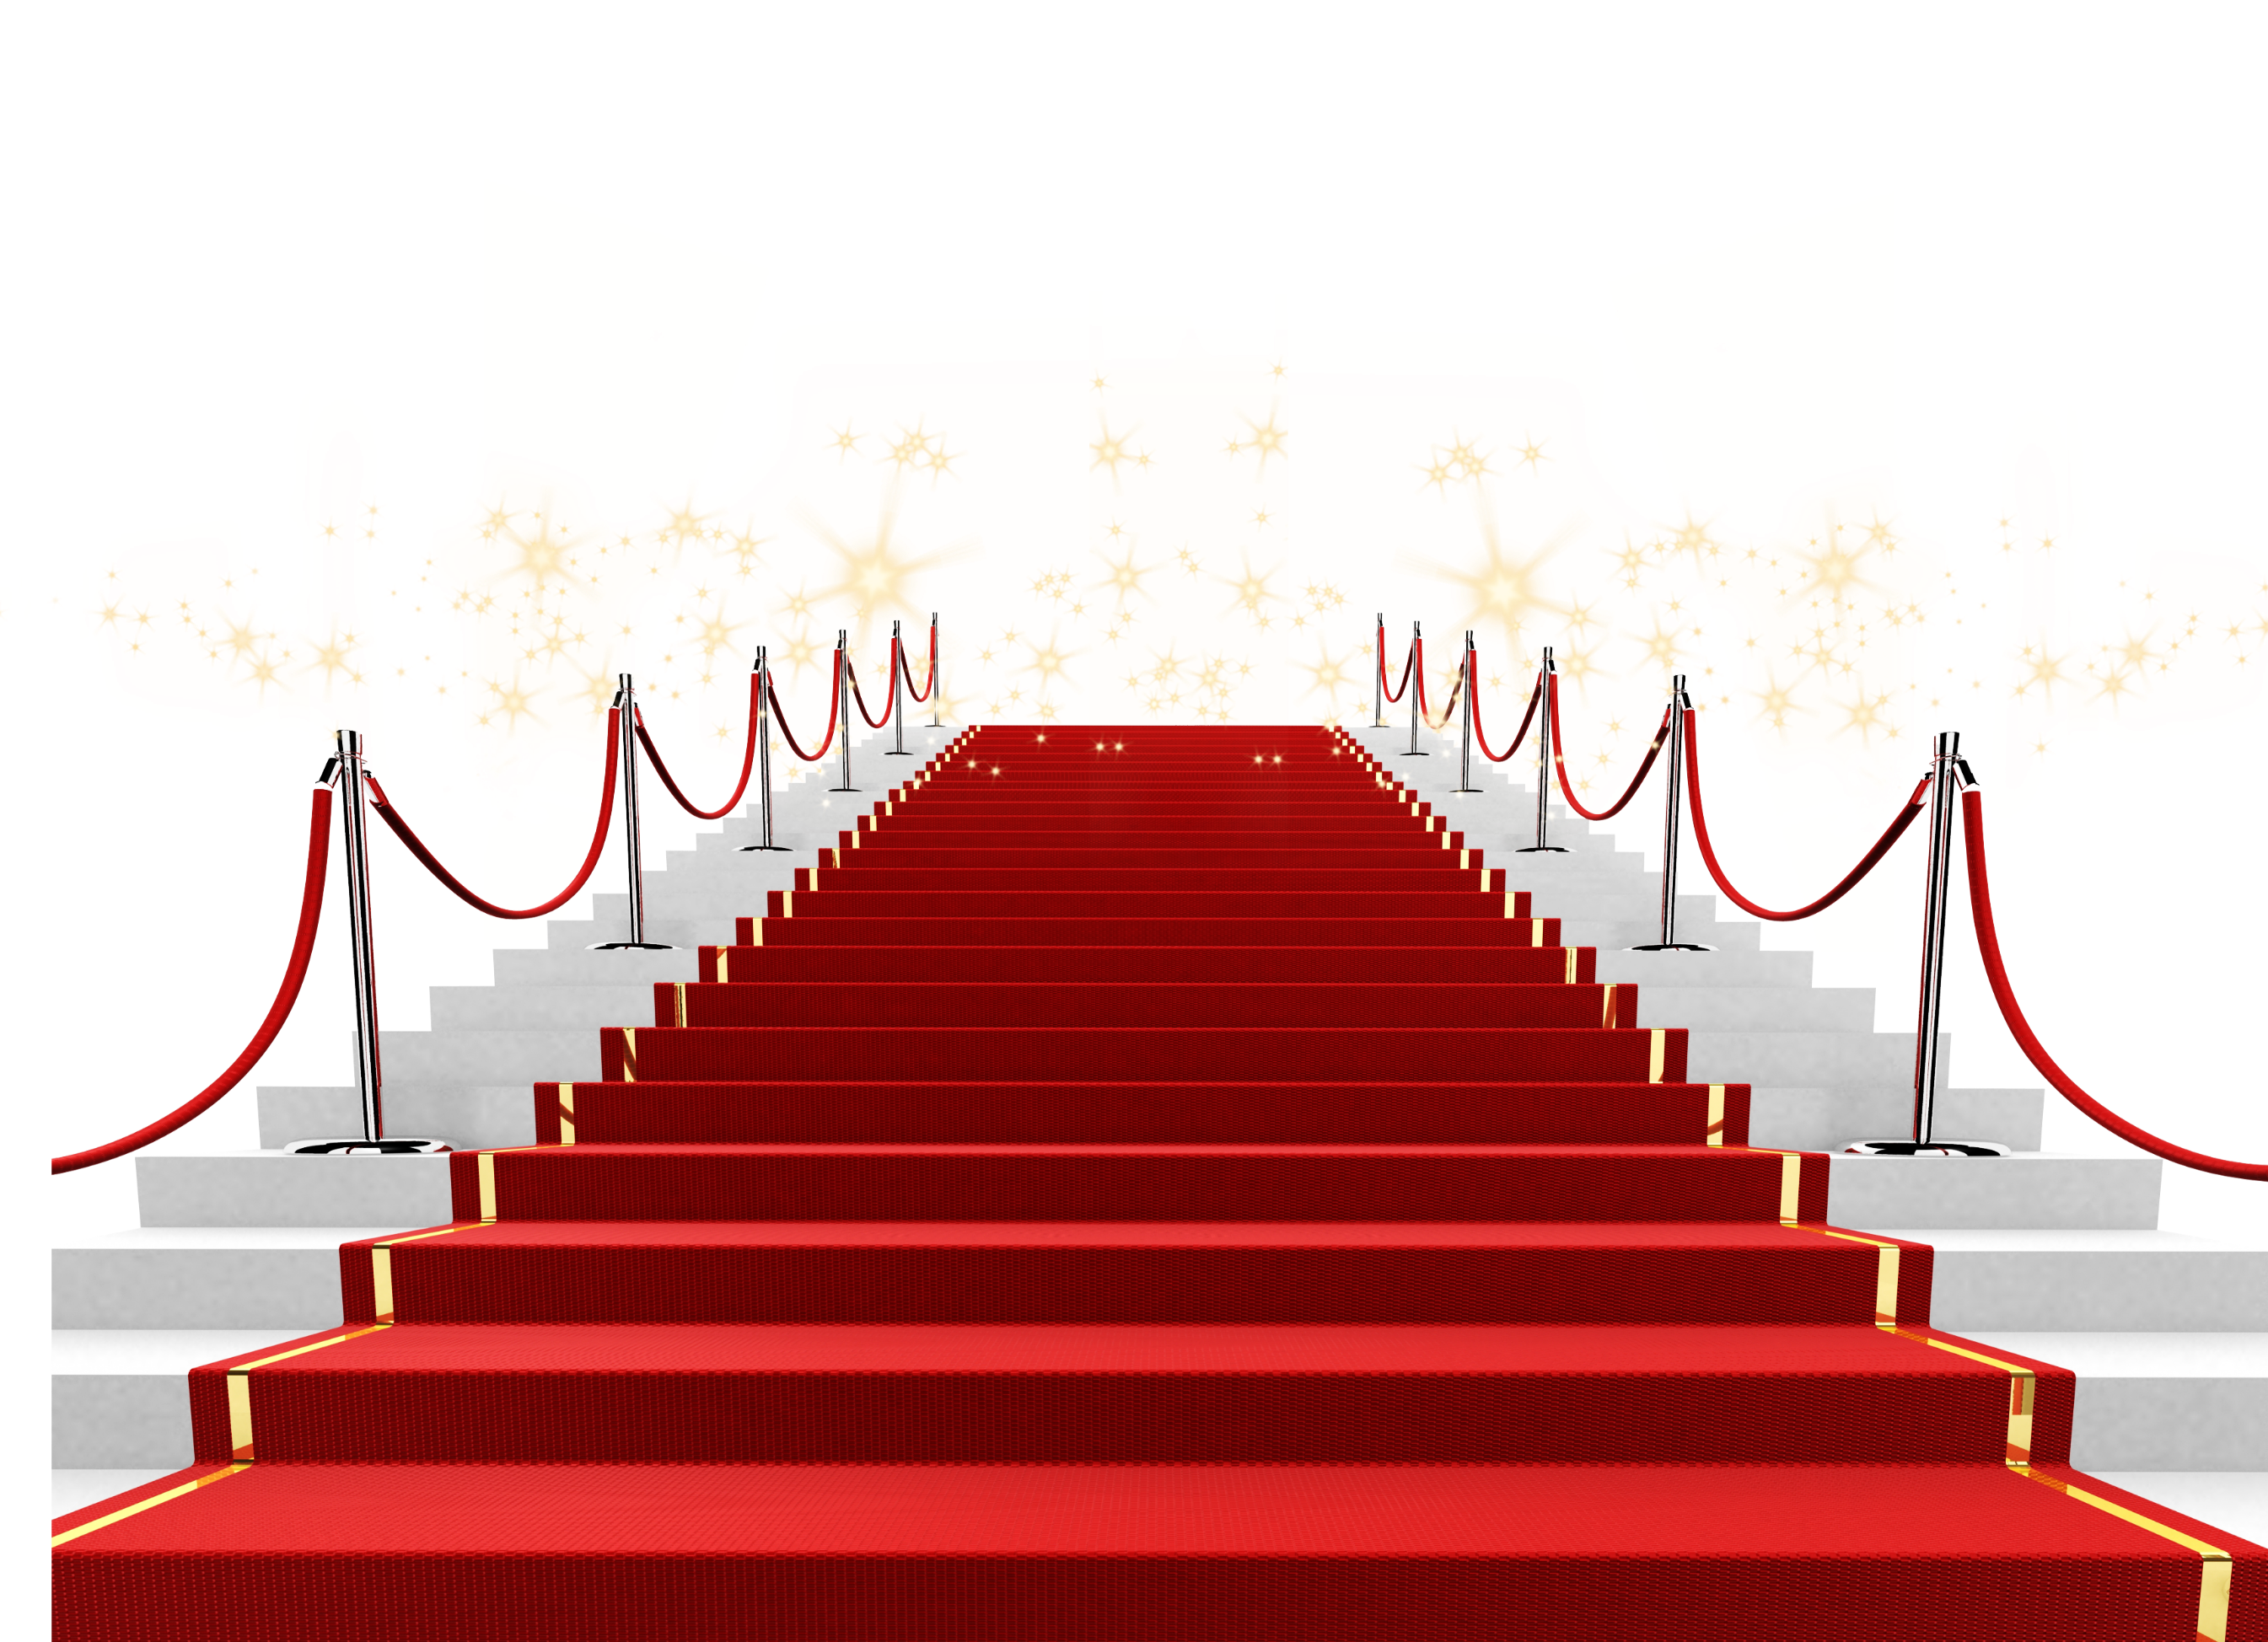 Олимпийские ступеньки. Красная ковровая дорожка. Лестница с красной дорожкой. Krasanaya darojka. Лестница на прозрачном фоне.